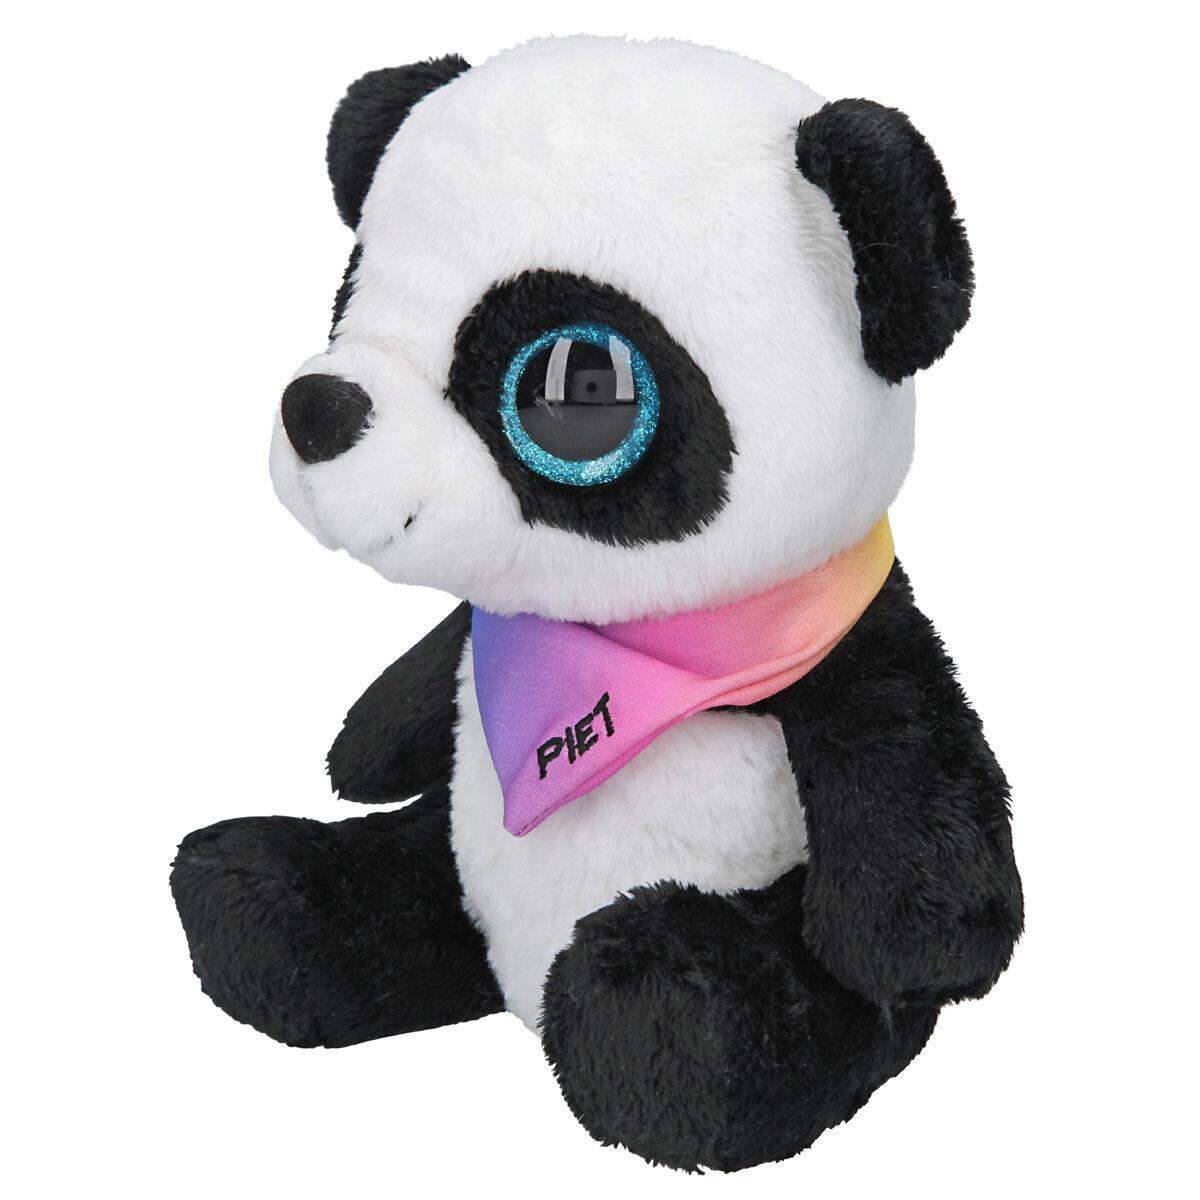 Depesche SNUKIS Plüsch Panda Piet, 18 cm